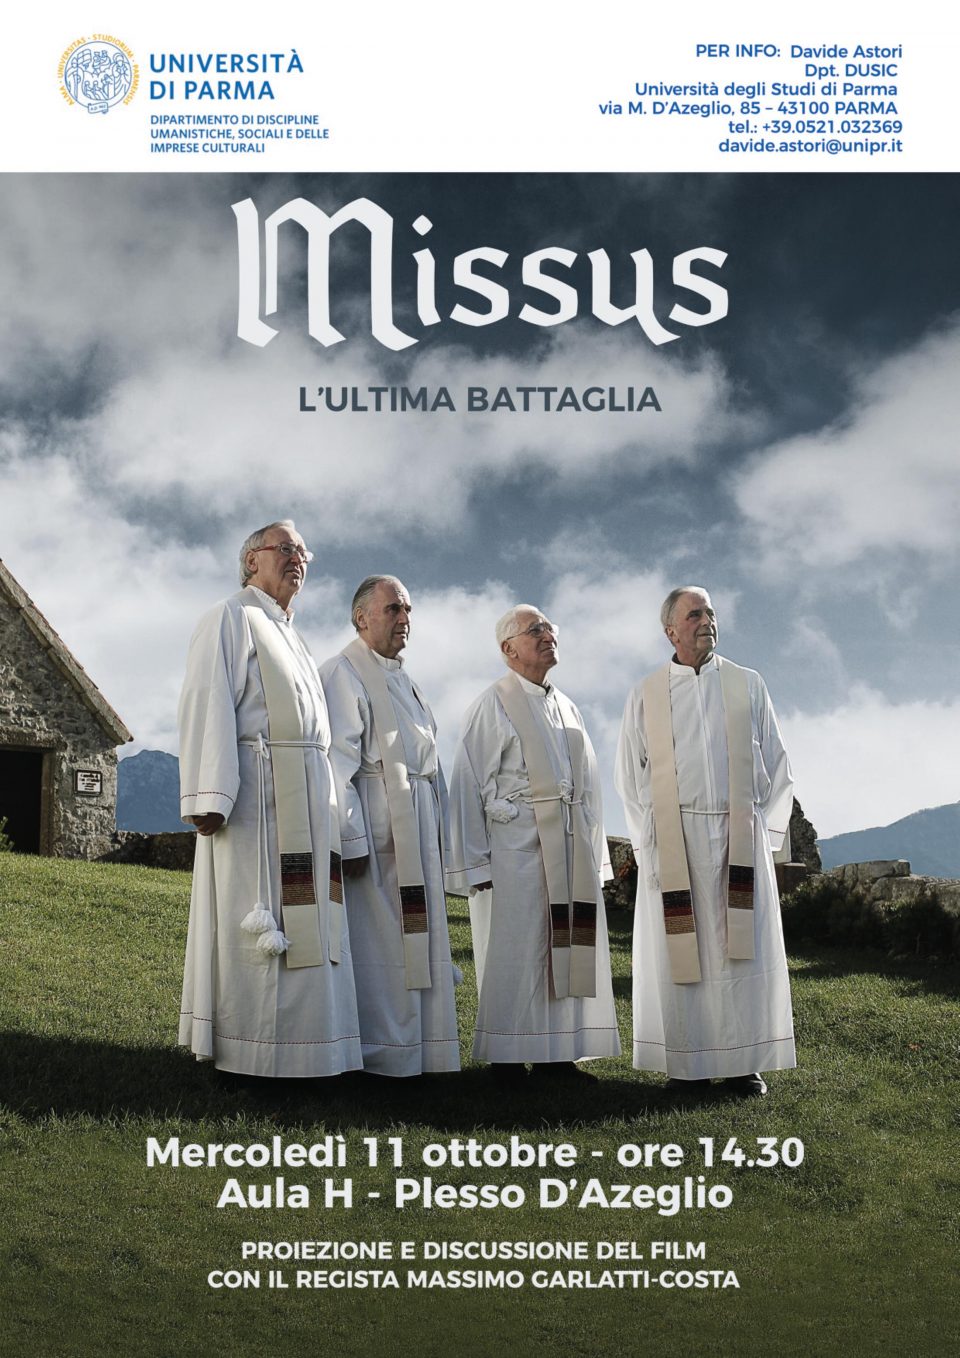 Proiezione del documentario “Missus” di Massimo Garlatti Costa – mercoledì 11 ottobre, ore 14.30, Università degli Studi di Parma